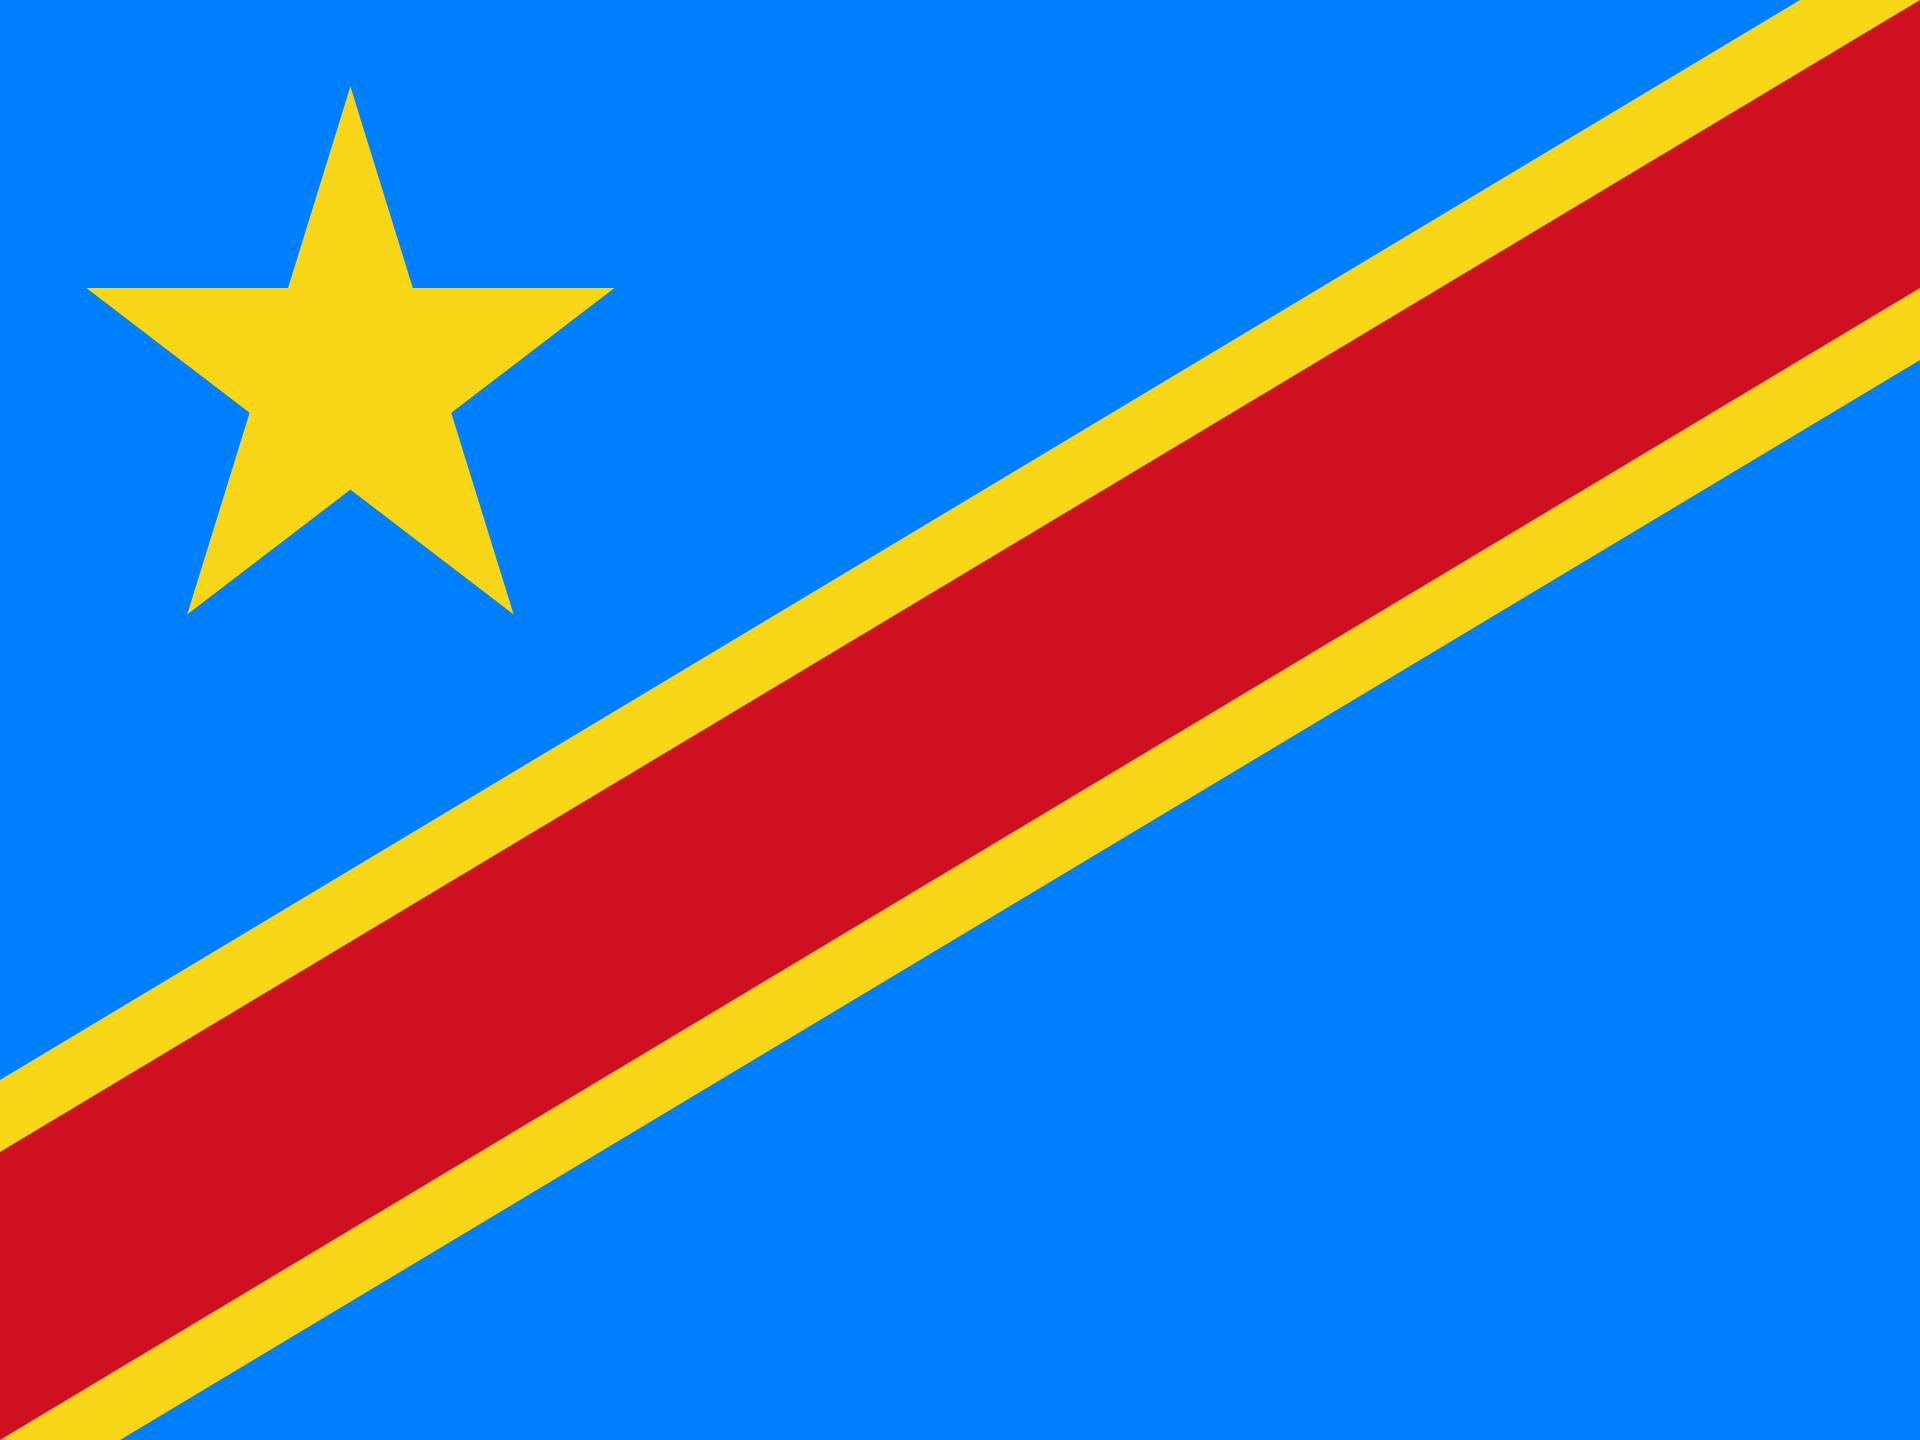 Congo (the Democratic Republic of the)